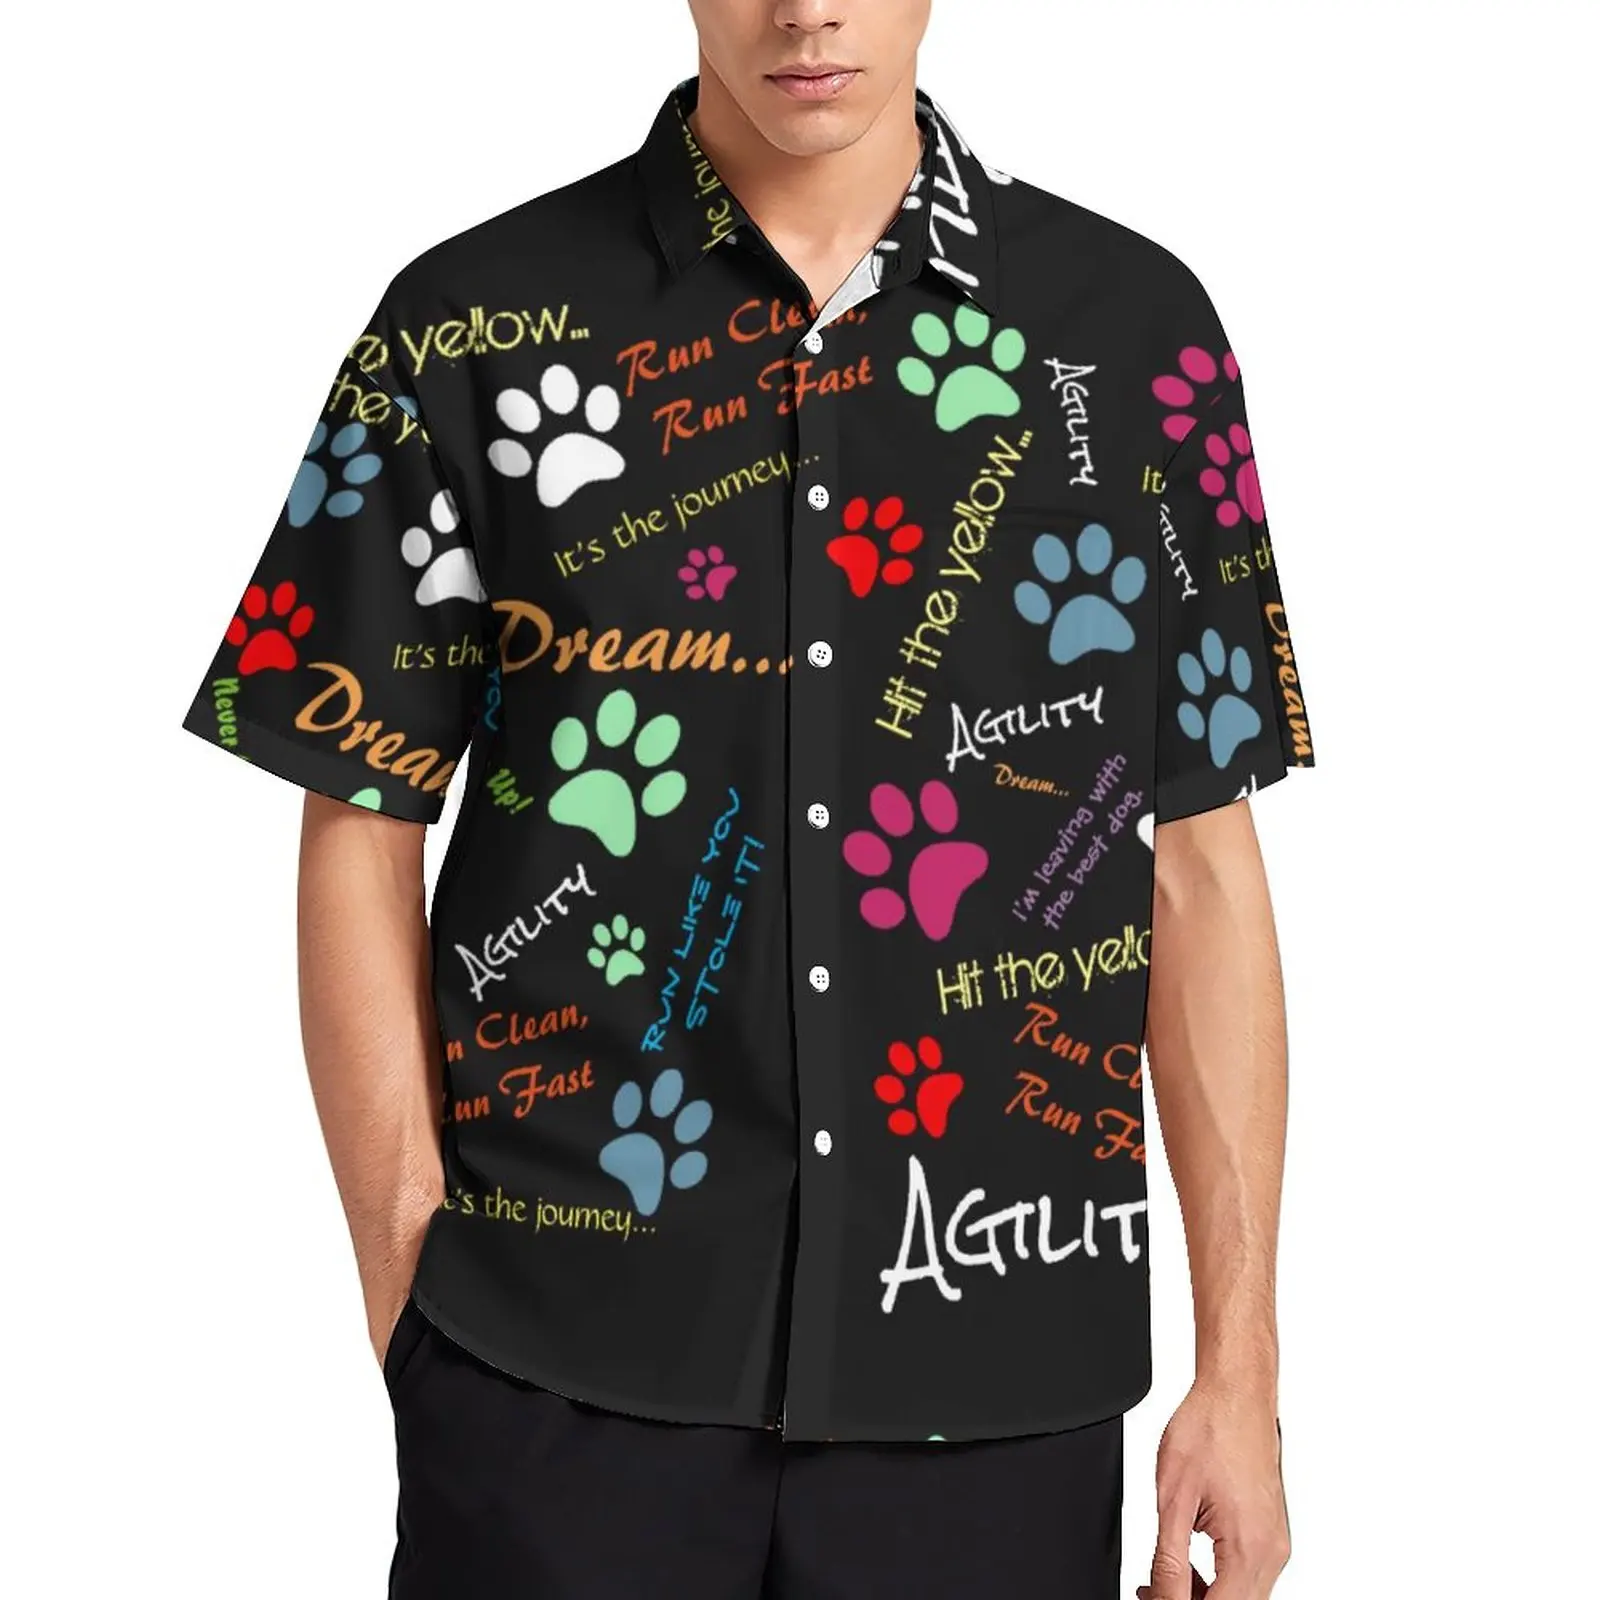 

Быстрая пляжная рубашка Dog Run, разноцветные Гавайские повседневные рубашки с принтом лап, Мужская Уличная одежда, блузки с коротким рукавом, Индивидуальные топы, женская